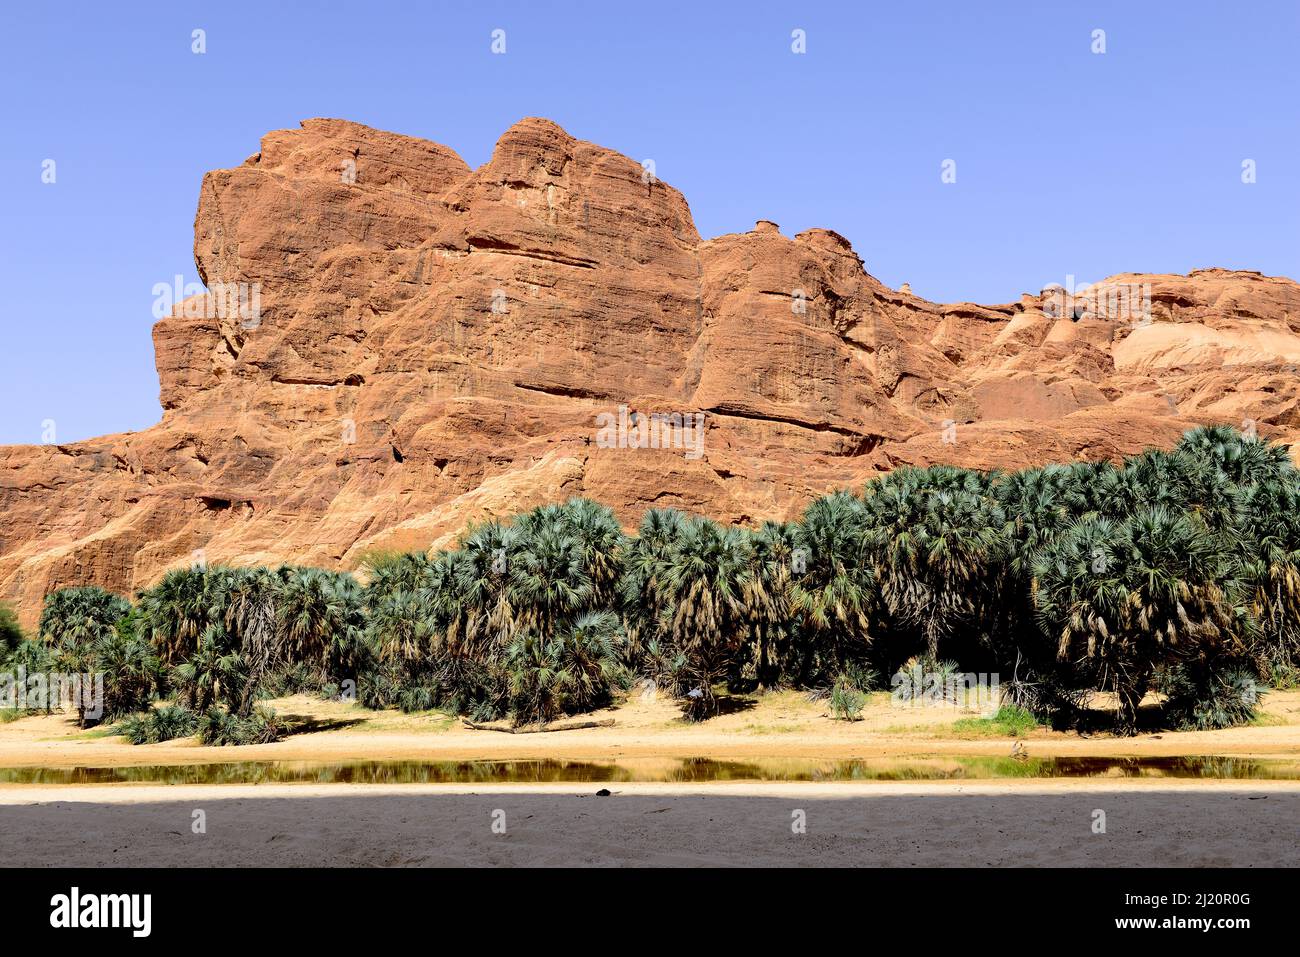 Formaciones rocosas de arenisca erosionadas y árboles en la Reserva Natural y Cultural Ennedi, Patrimonio de la Humanidad de la UNESCO, Desierto del Sahara, Chad. Septiembre 2019. Foto de stock